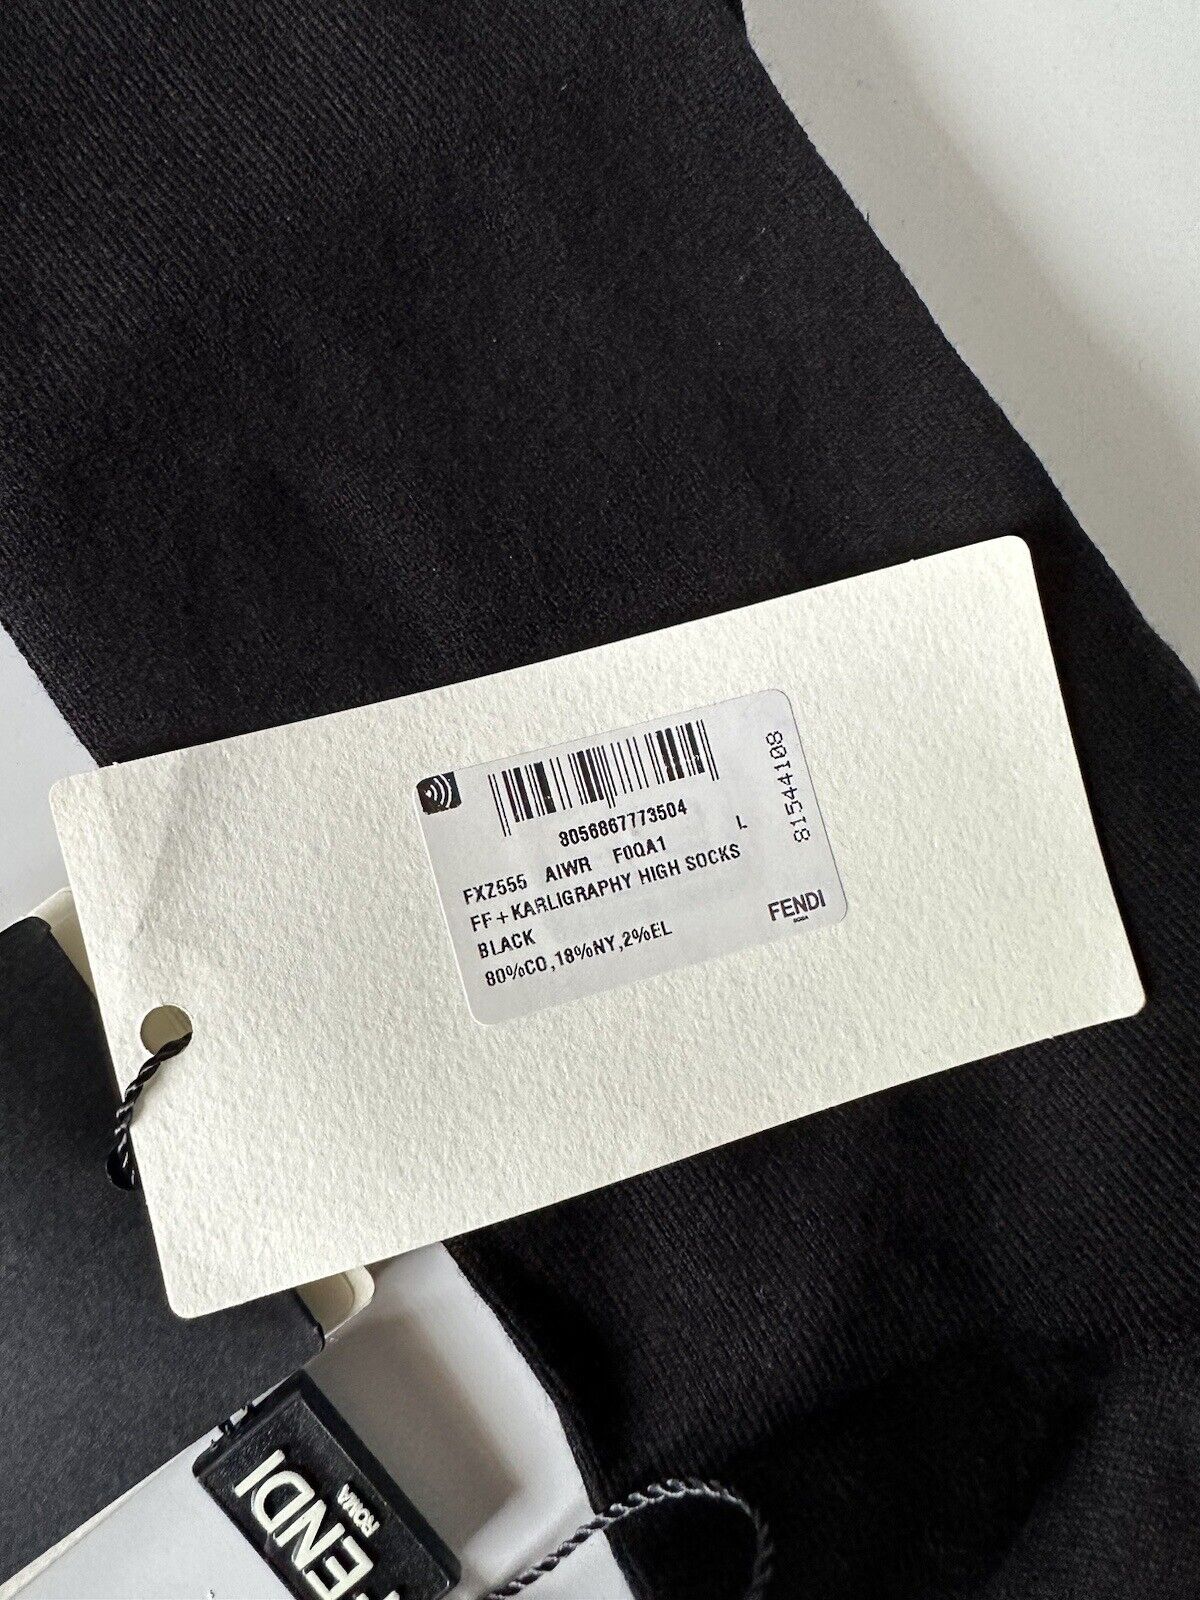 Neu mit Etikett: 260 $ Fendi FF Karligraphy-Socken, Schwarz, Größe L, hergestellt in Italien